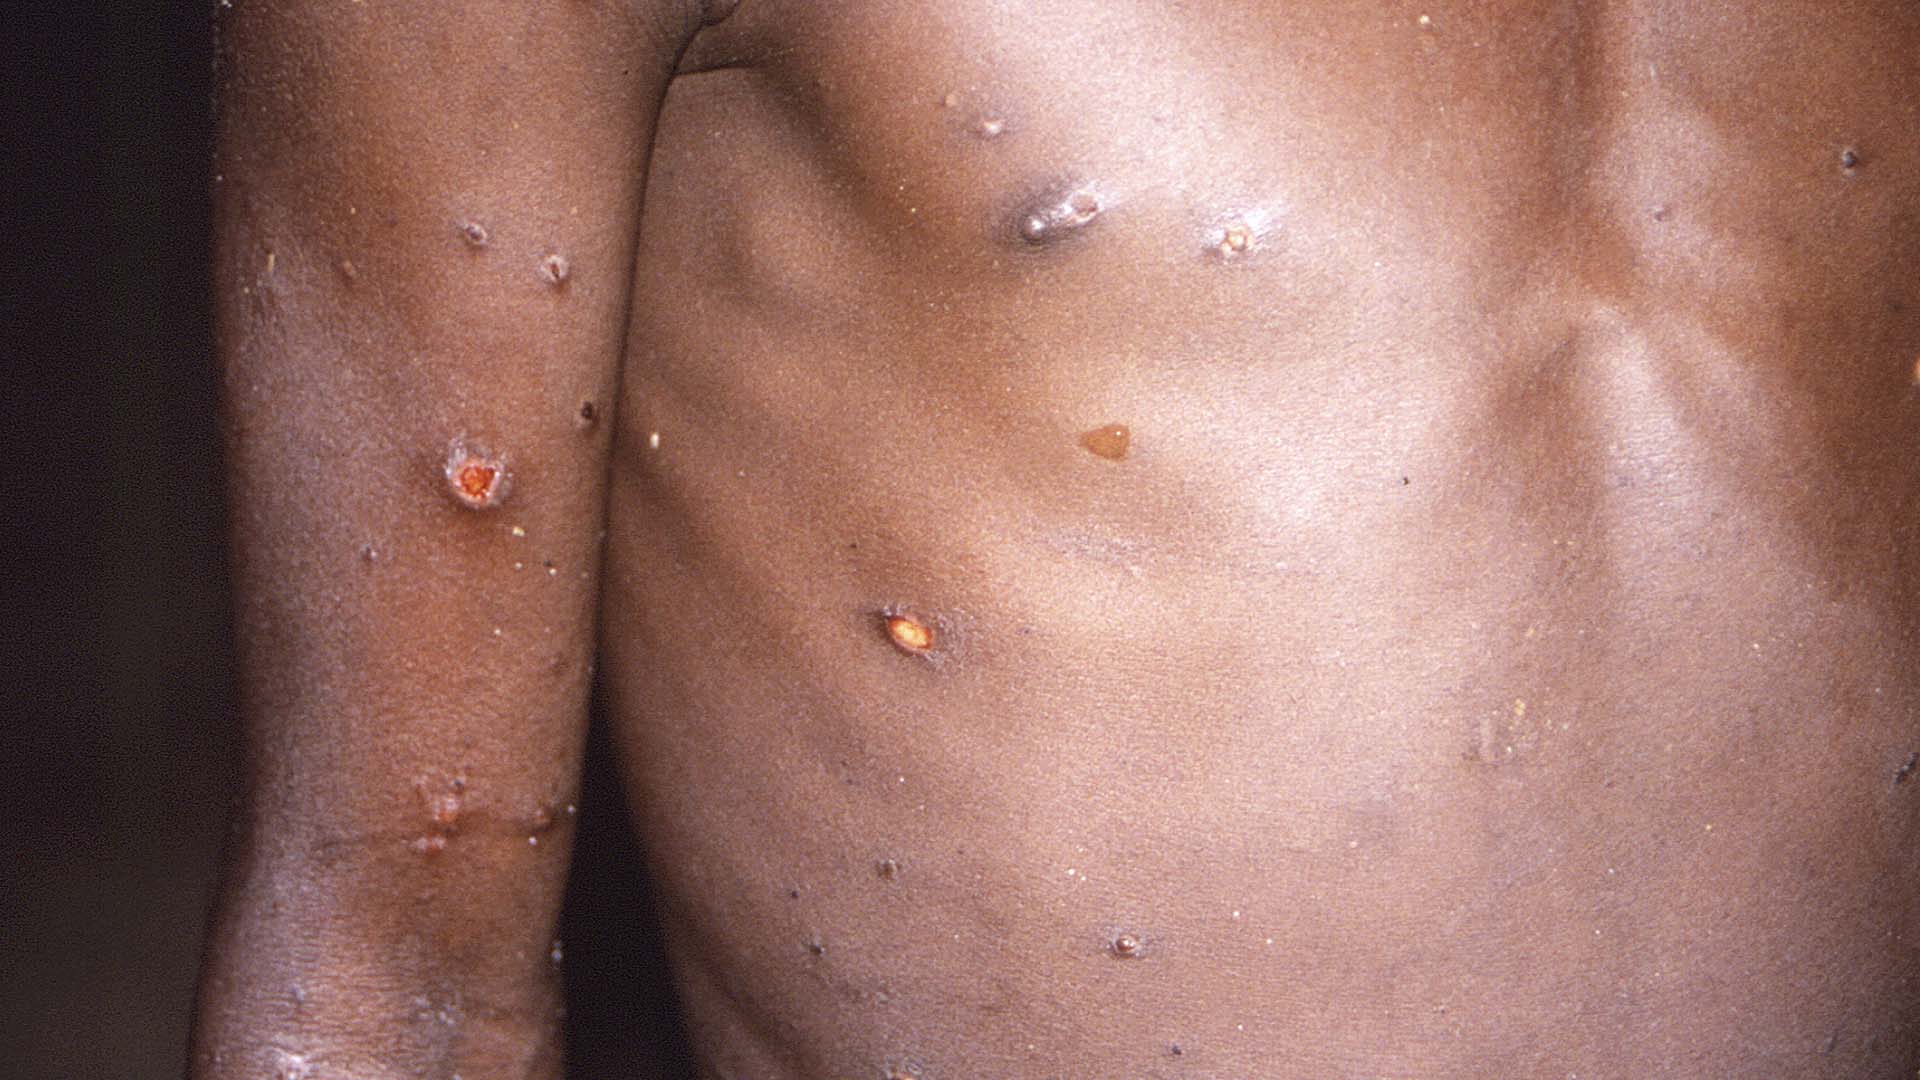 Les symptômes de cette infection sont des lésions cutanées et aux organes génitaux.